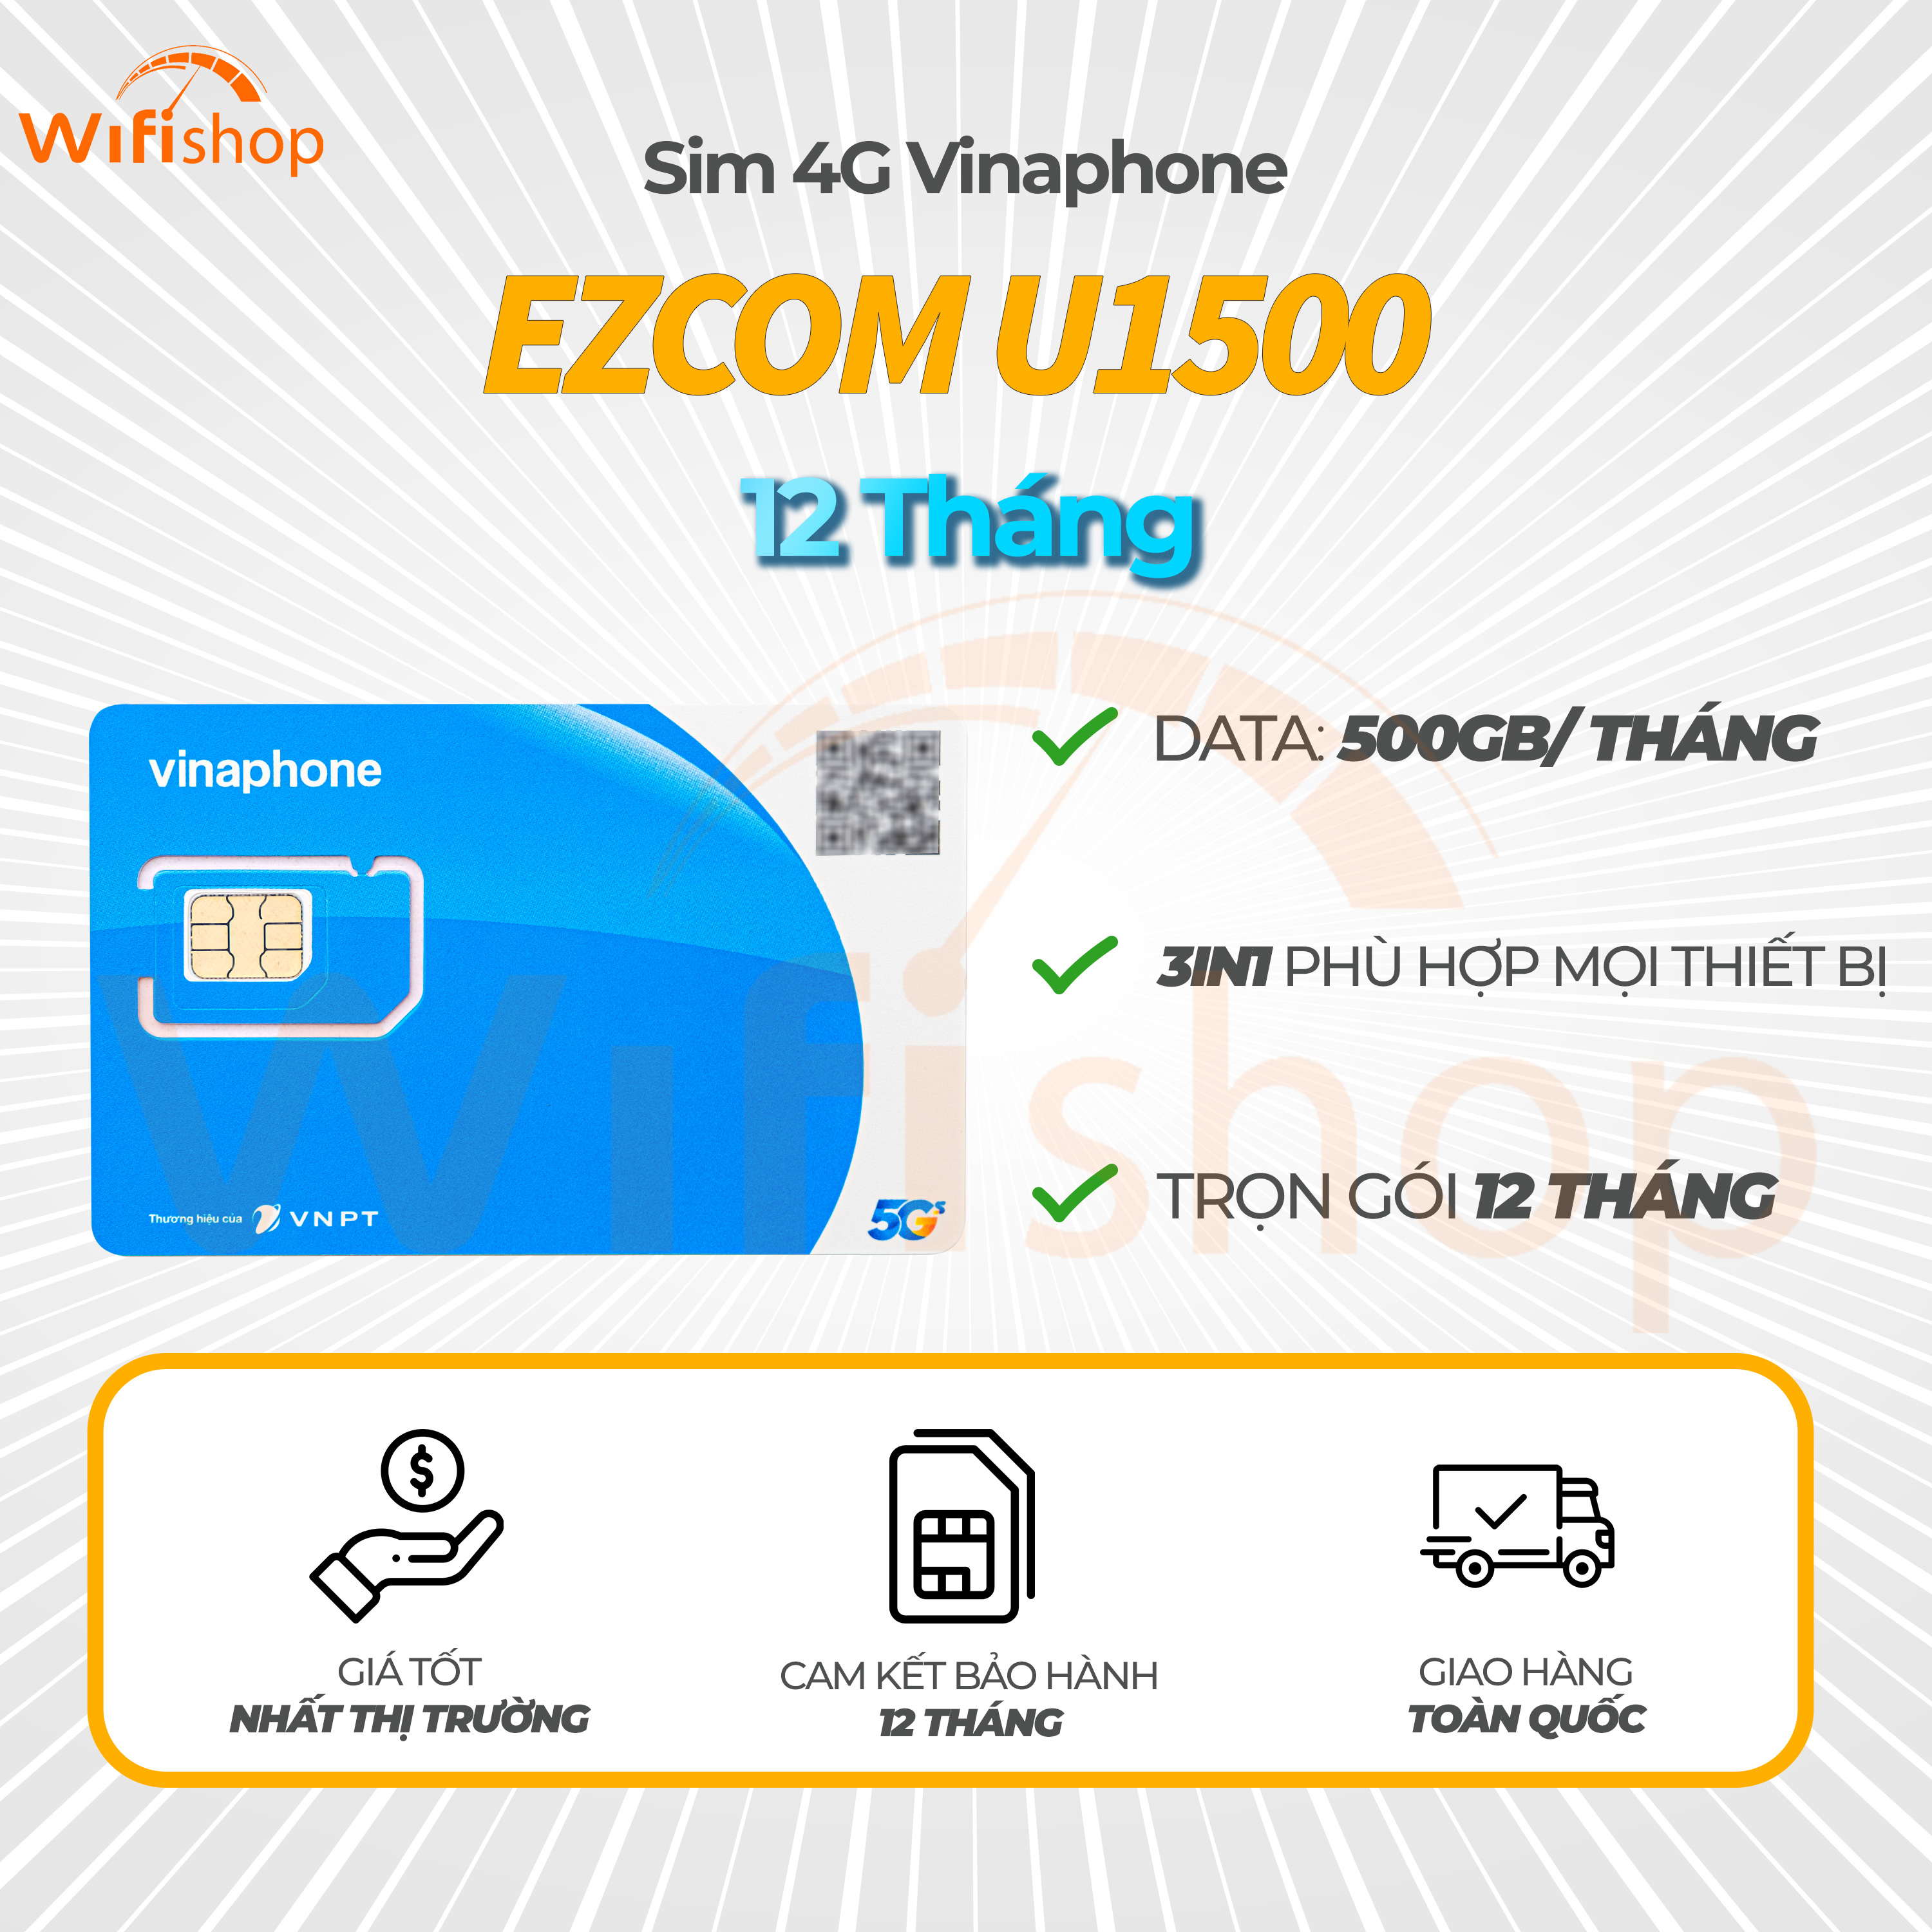 Sim 4G Vinafone Ezcom U1500 500GB/tháng - nạp sẵn 12 theo tháng 